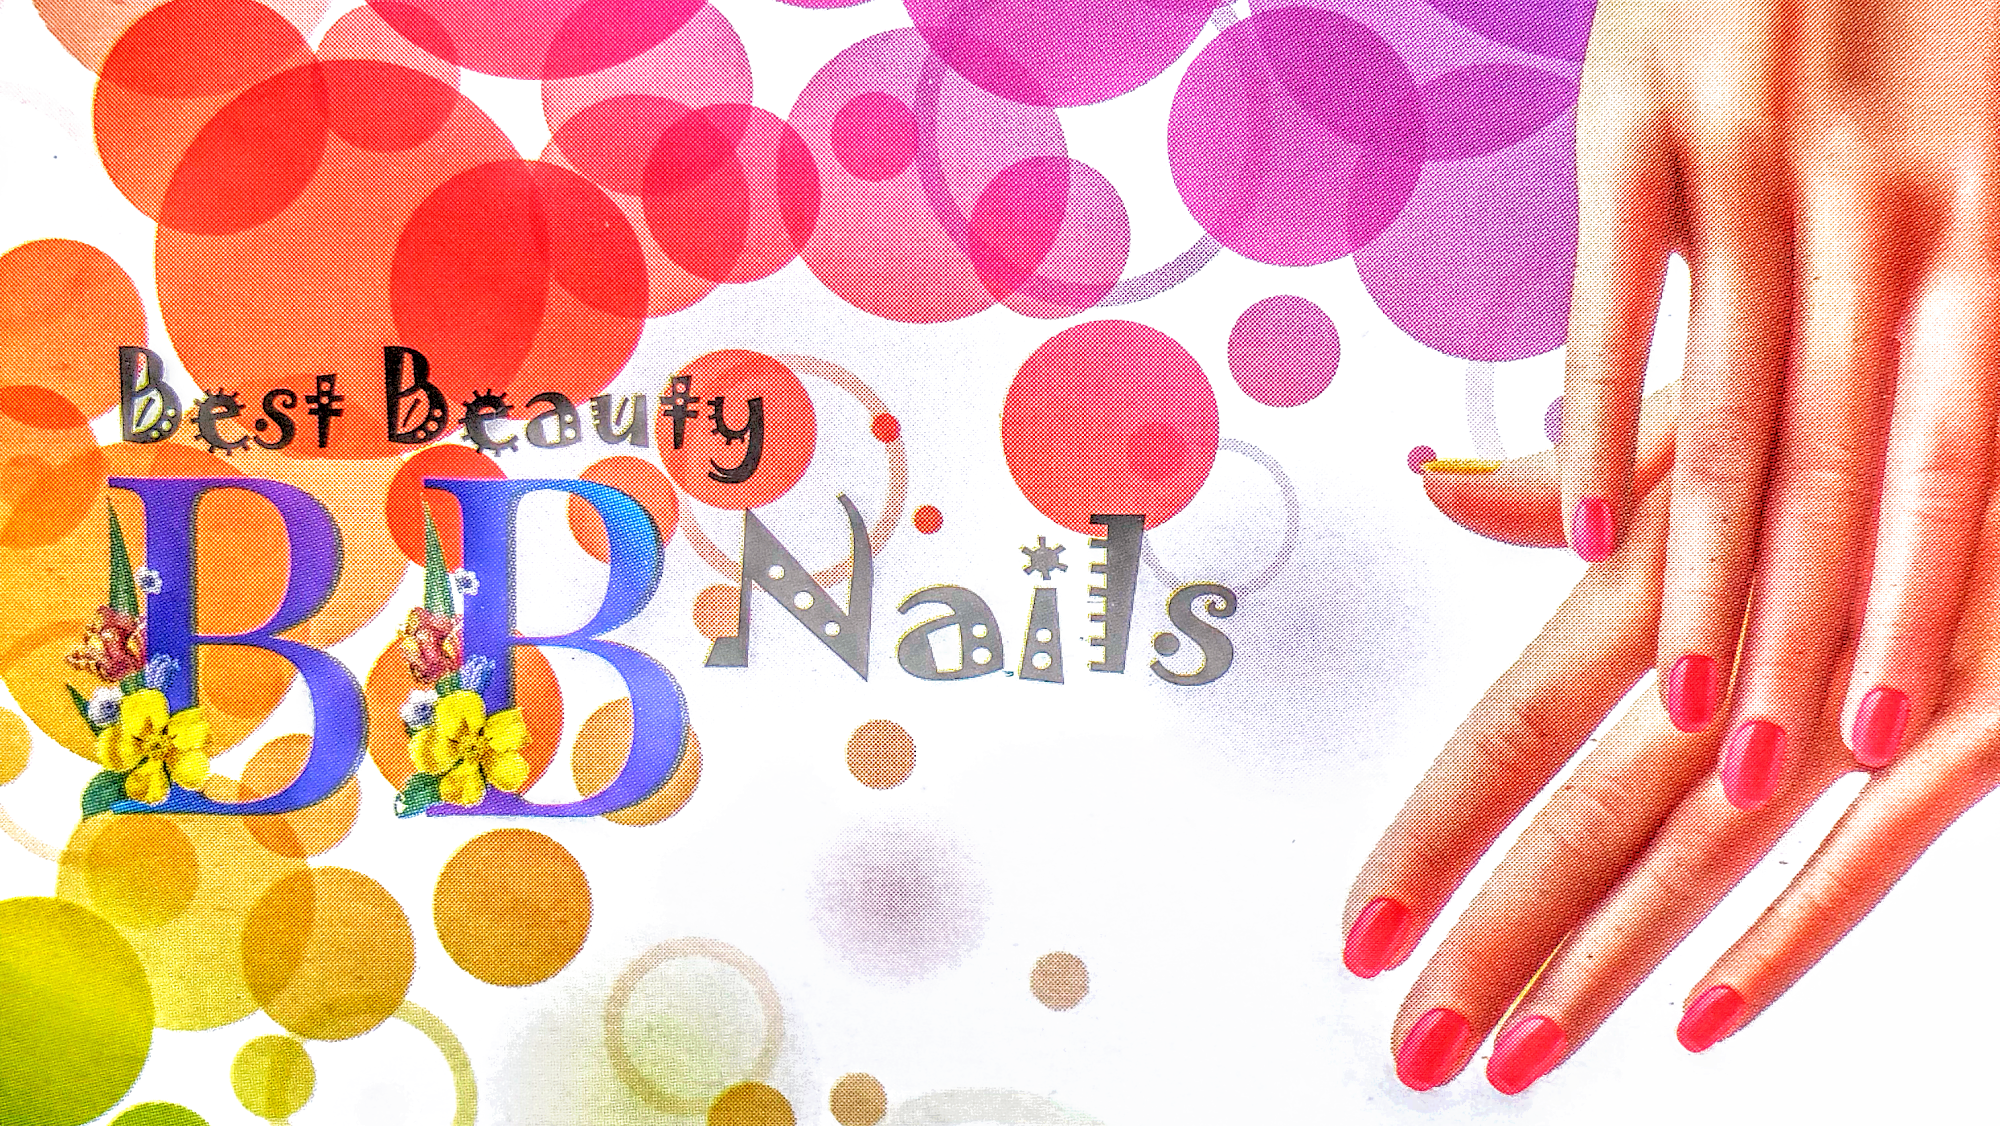 BB Nails